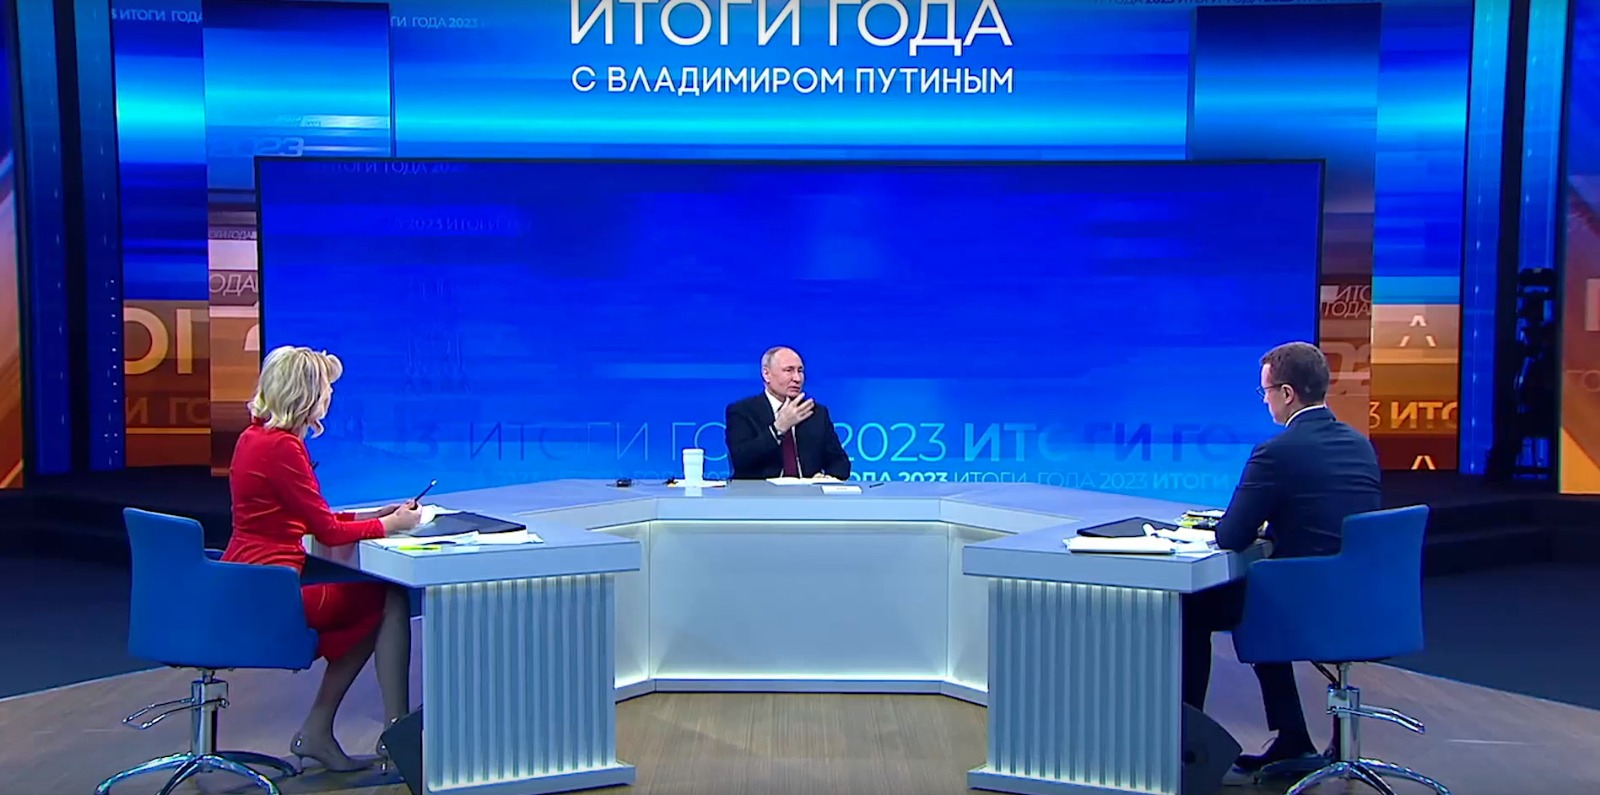 Президент РФ В.В. Путин ответил на вопрос о спорте от телеканала "Матч ТВ" во время прямой линии с гражданами и большой пресс-конференции